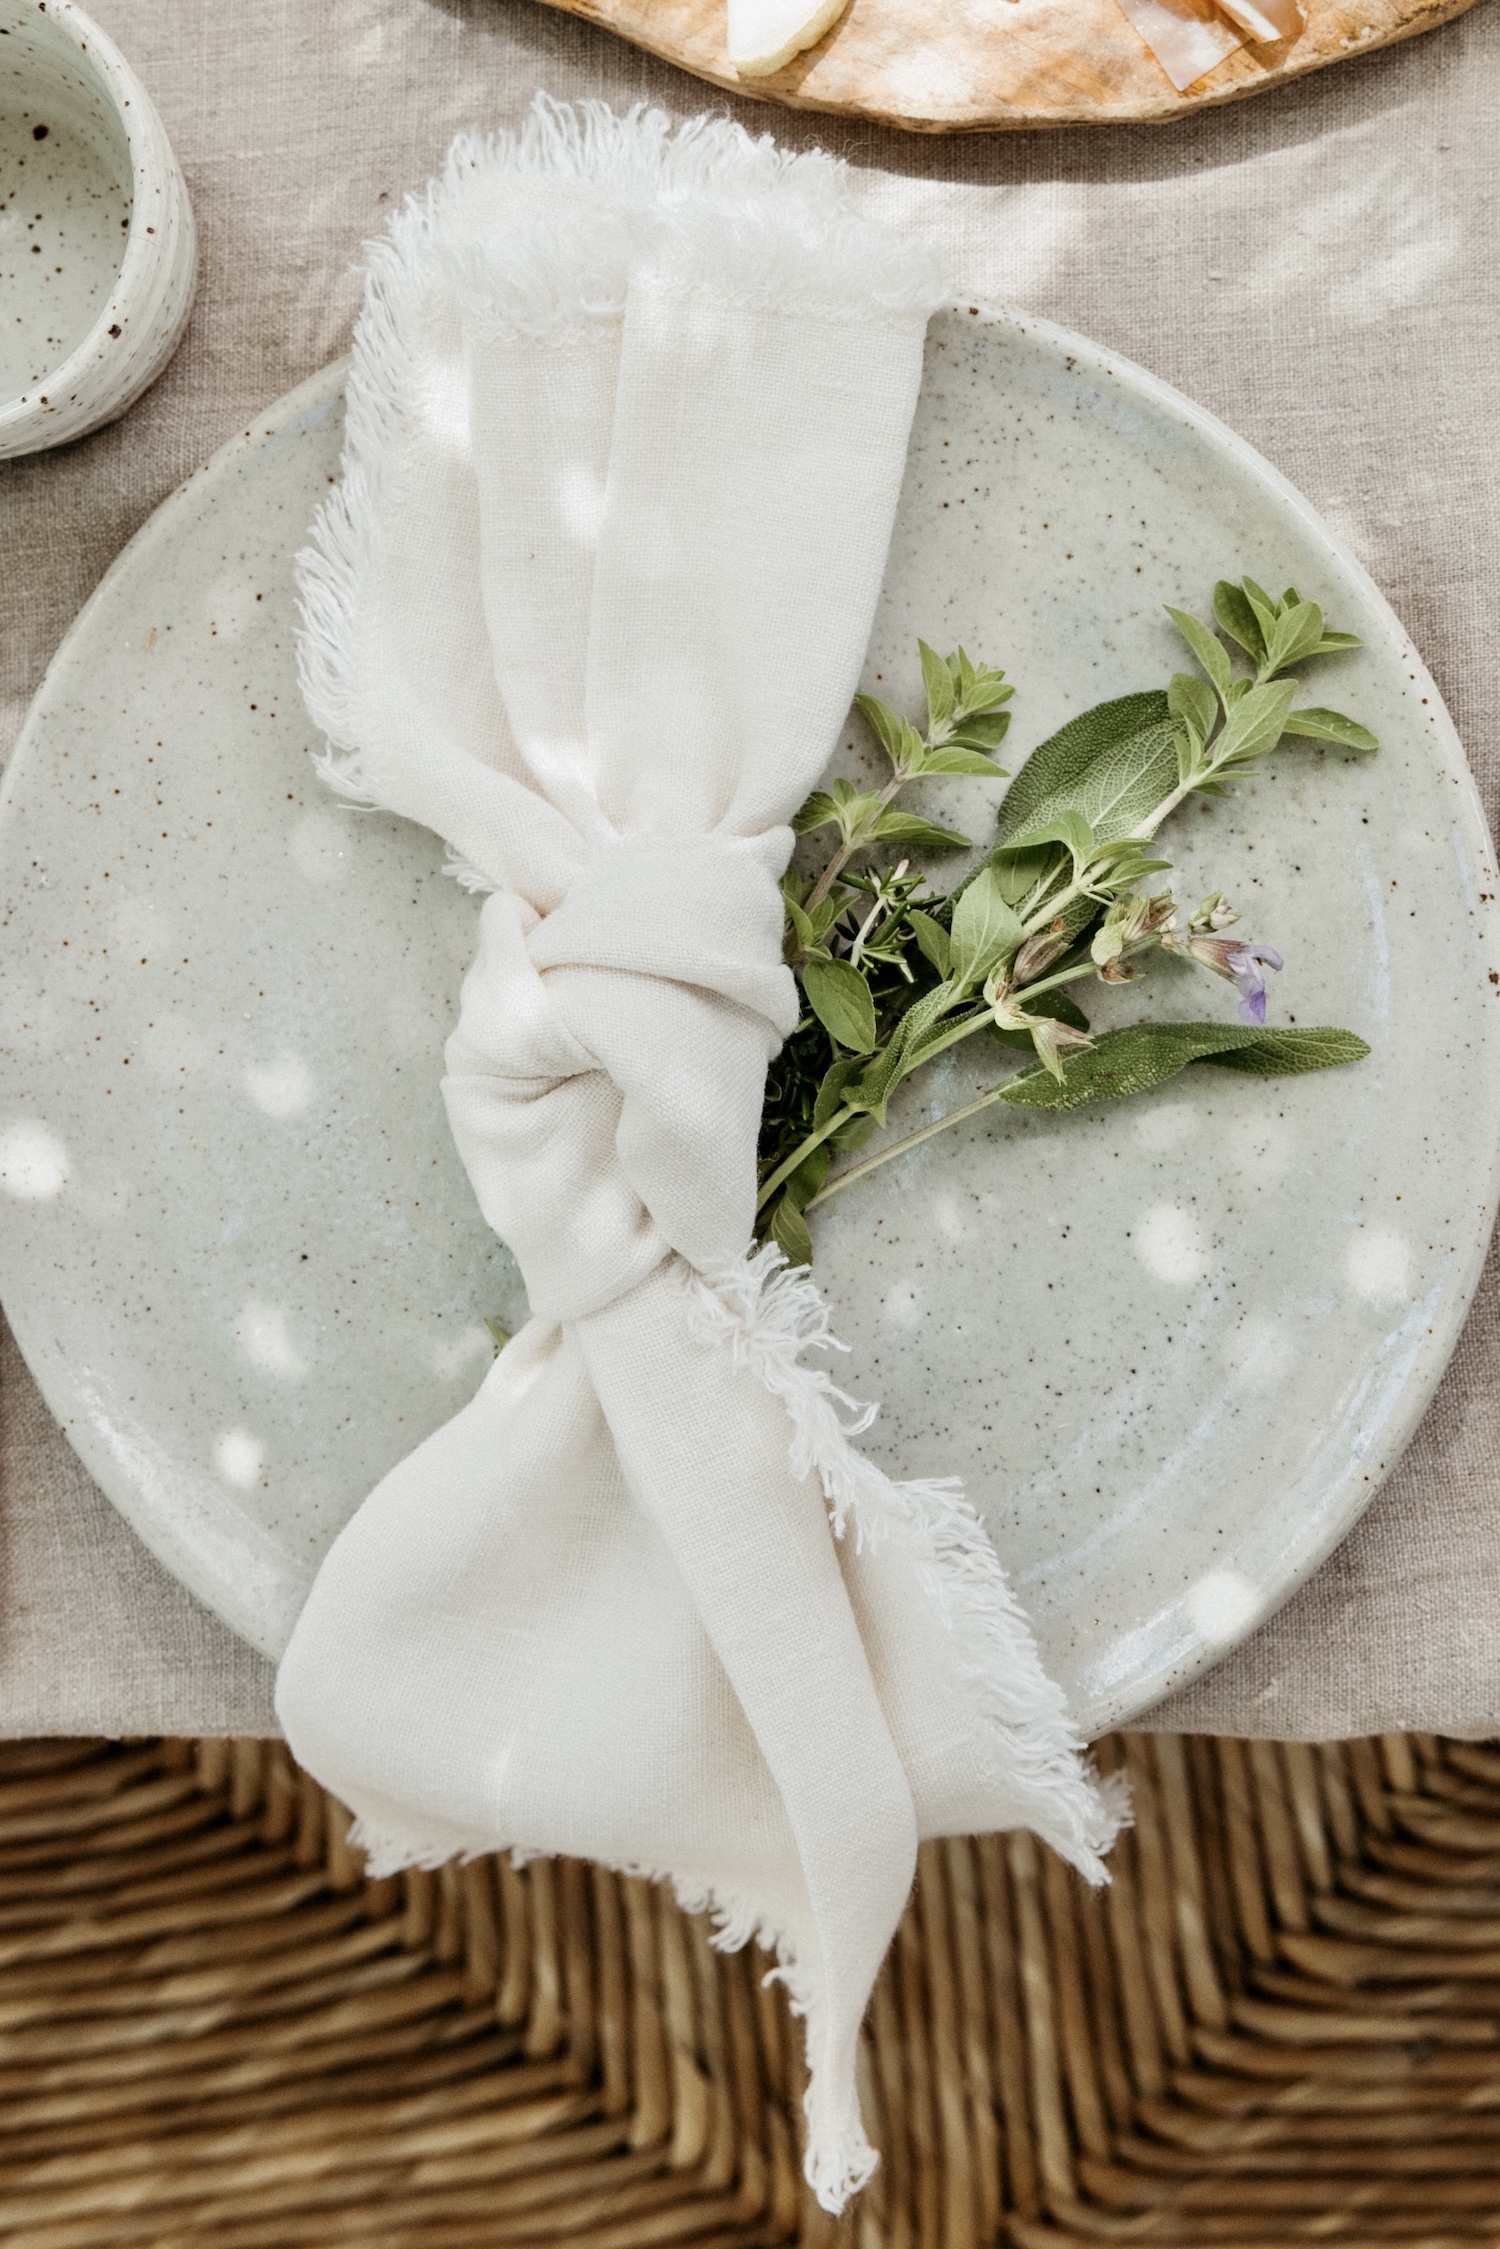 cómo atar una servilleta de lino hierbas decoración de la mesa del día de la madre